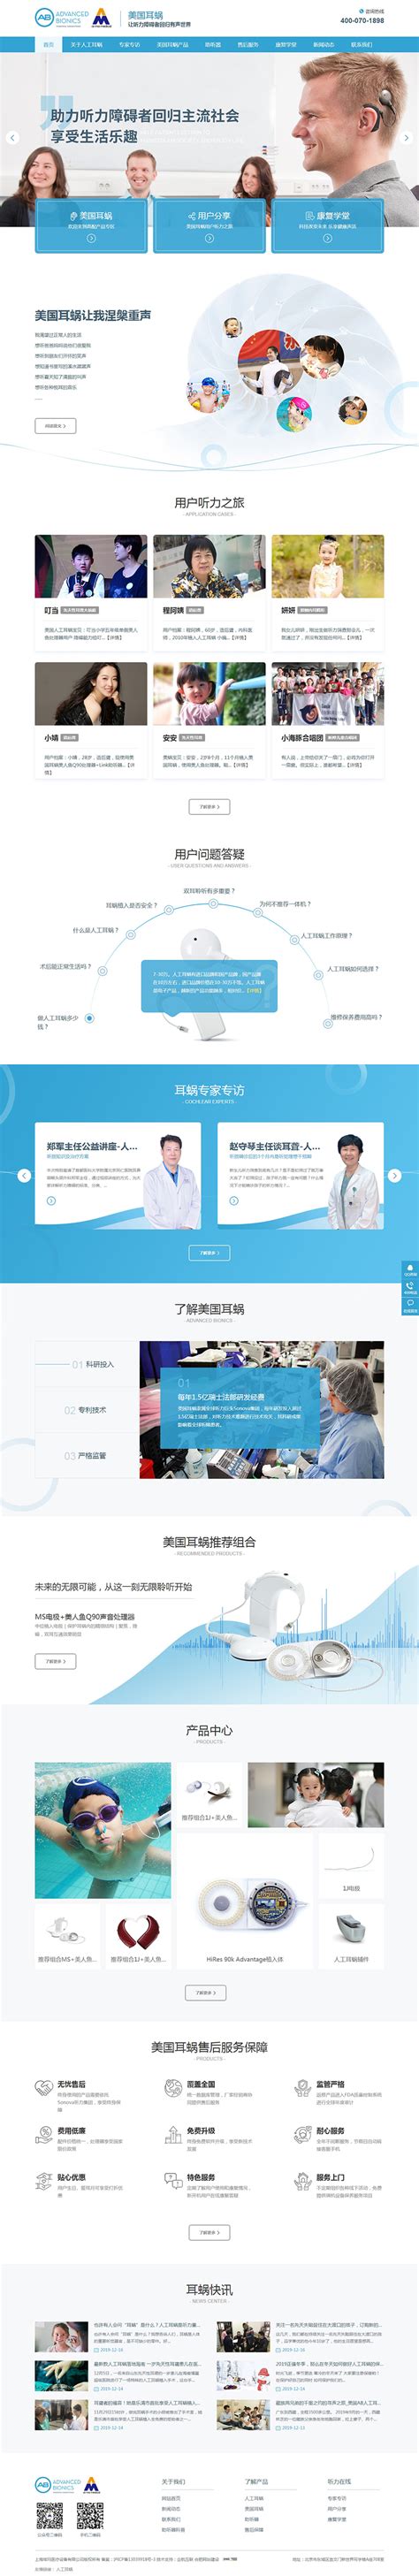 上海埃玛医疗设备有限公司_企航互联_合肥网站建设